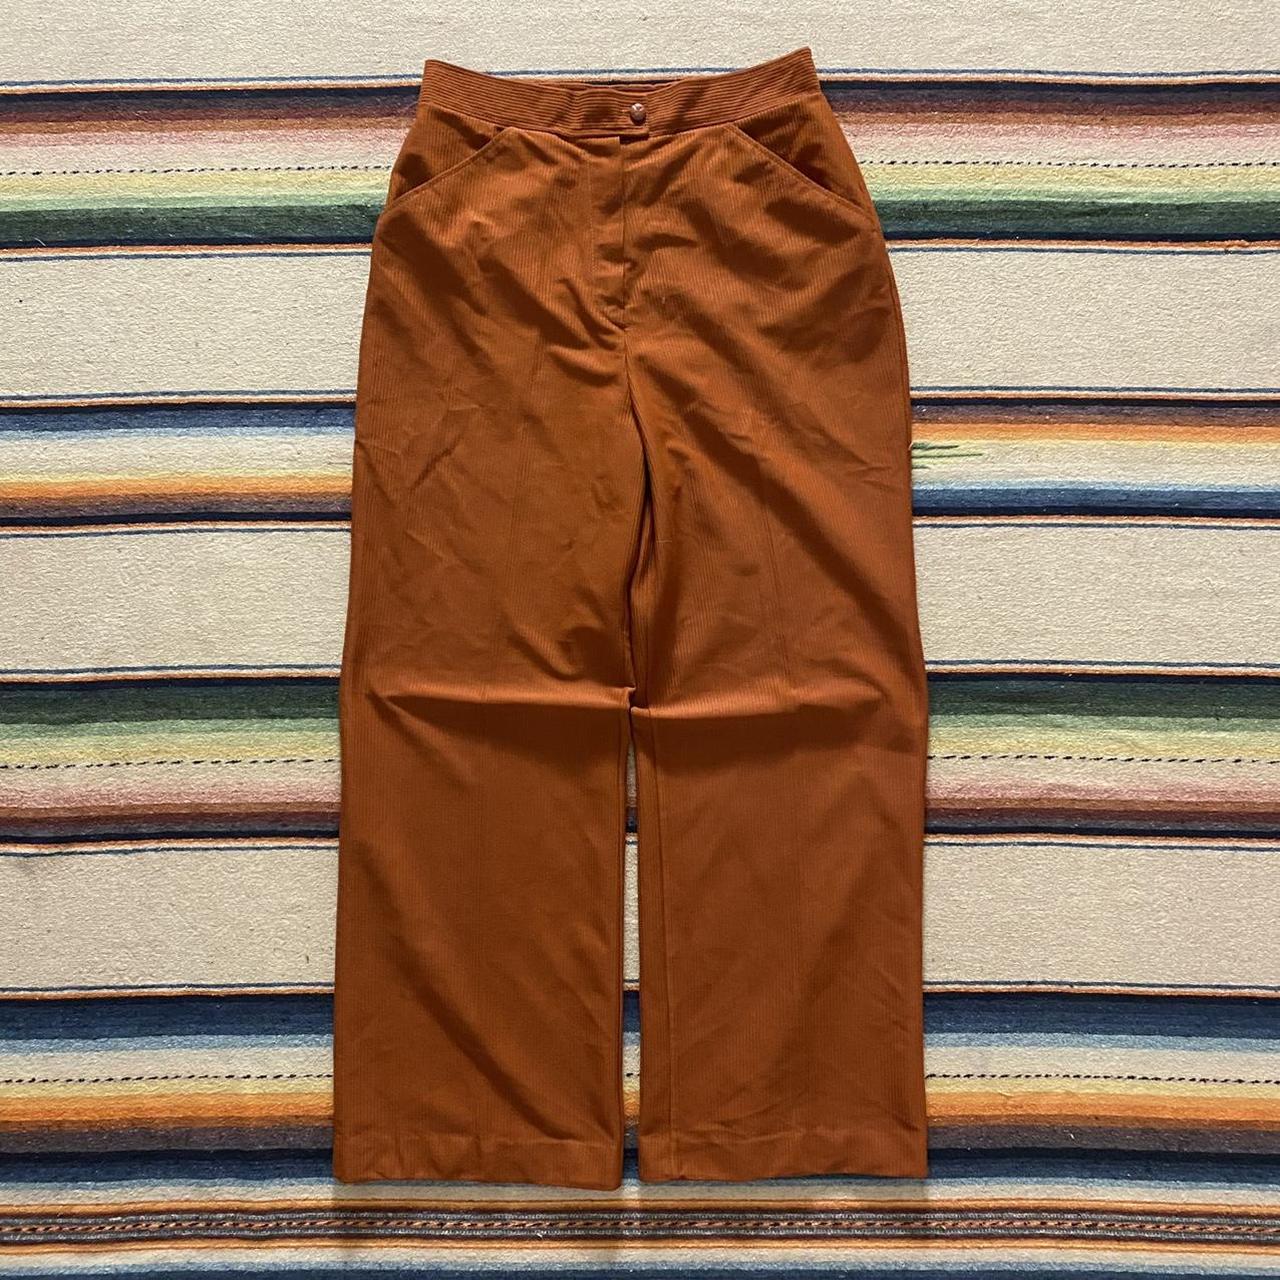 Sears Women's Orange Trousers